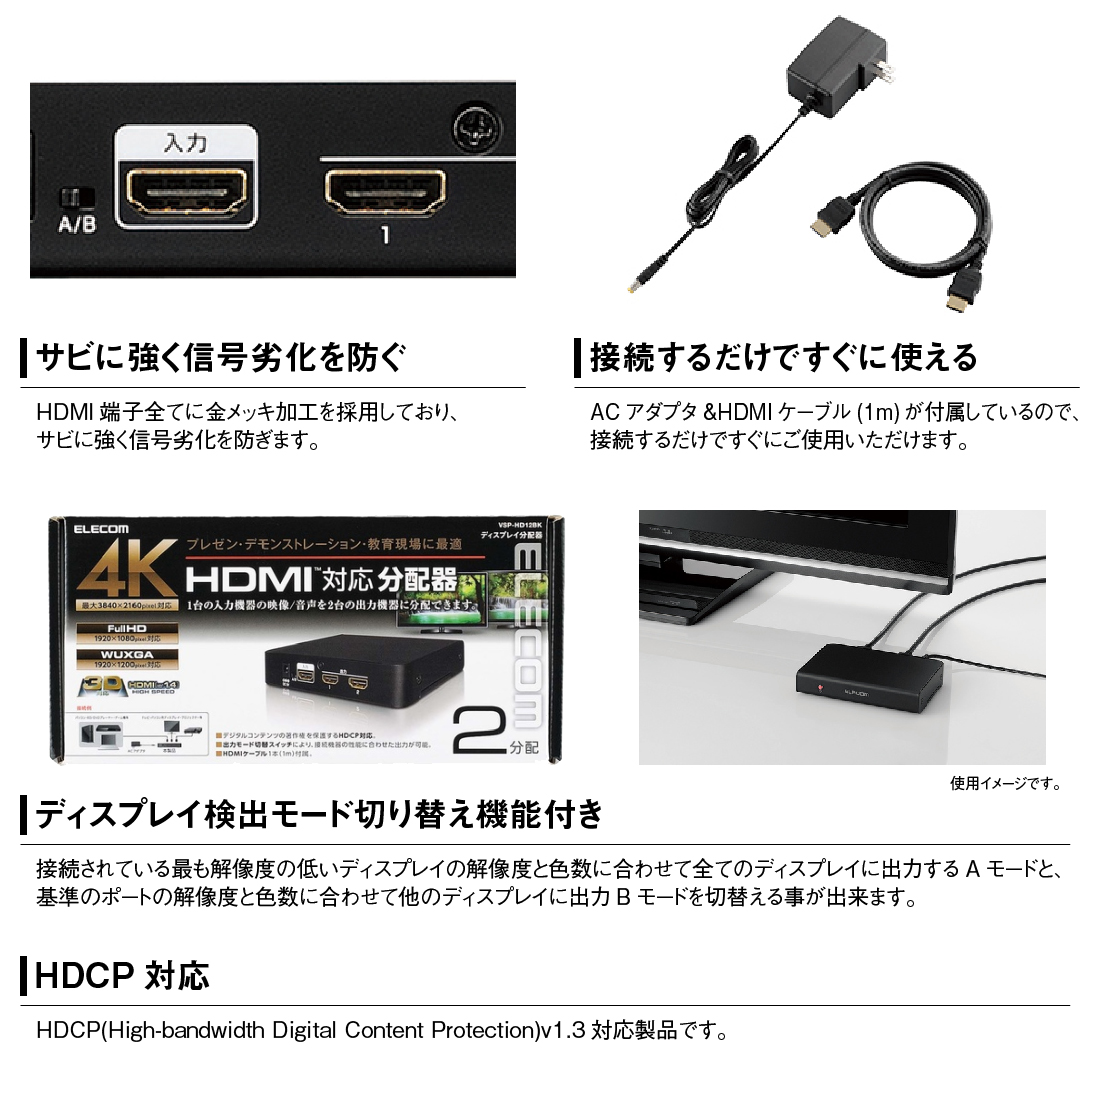 エレコム HDMI分配器 4K 60Hz(18Gbps) 1入力 2出力 HDCP2.2対応 VSP